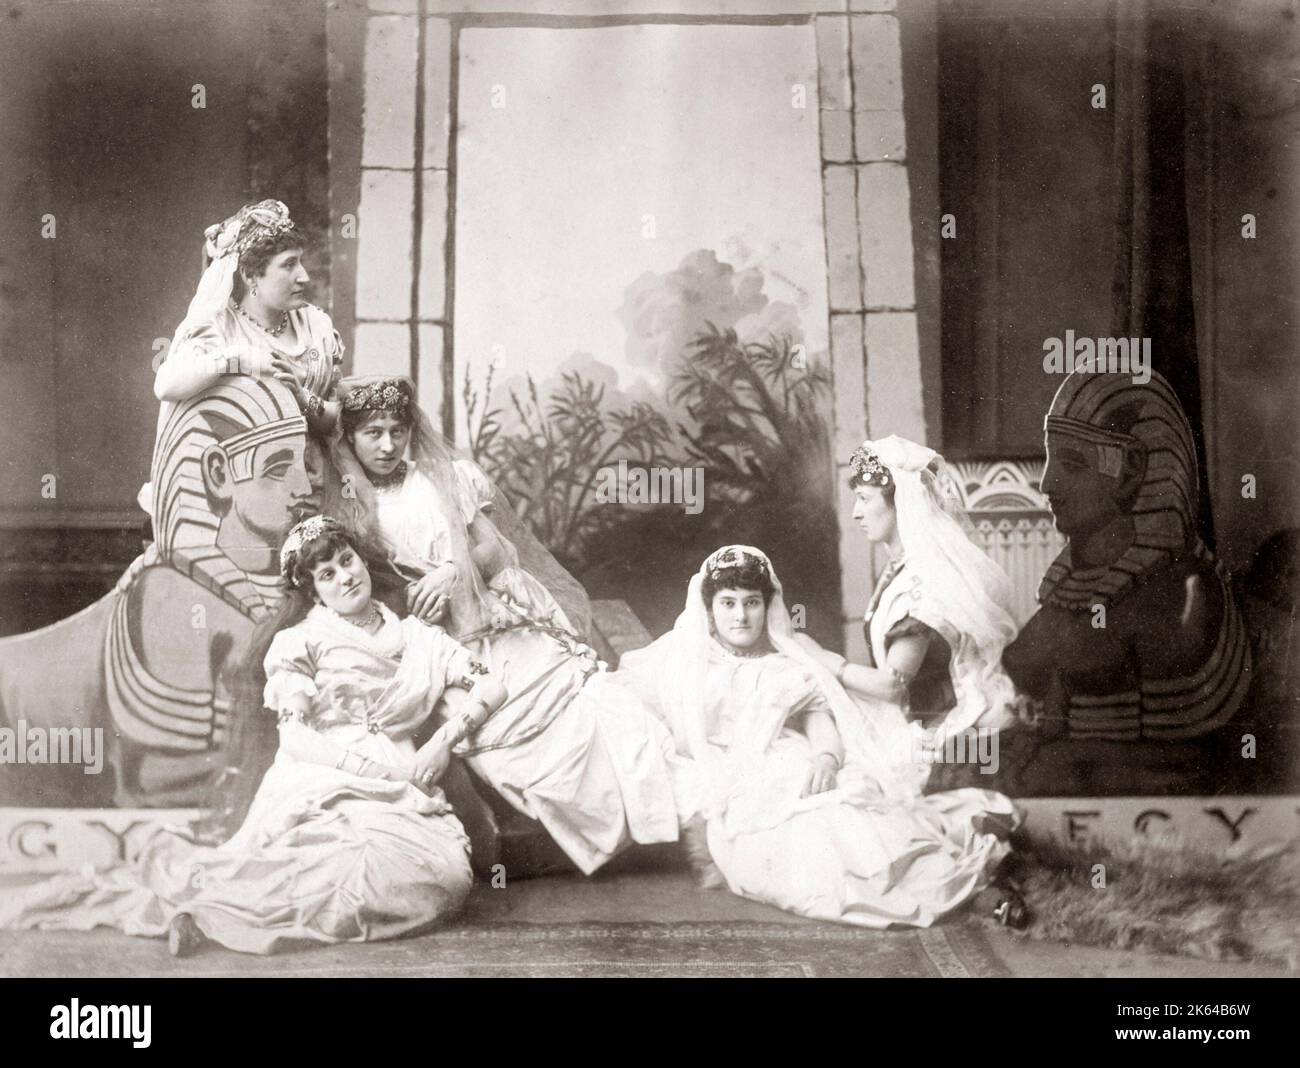 Retrato de grupo de mujeres europeas en configuración egipcia clásica, Egipto, c.1880's Foto de stock